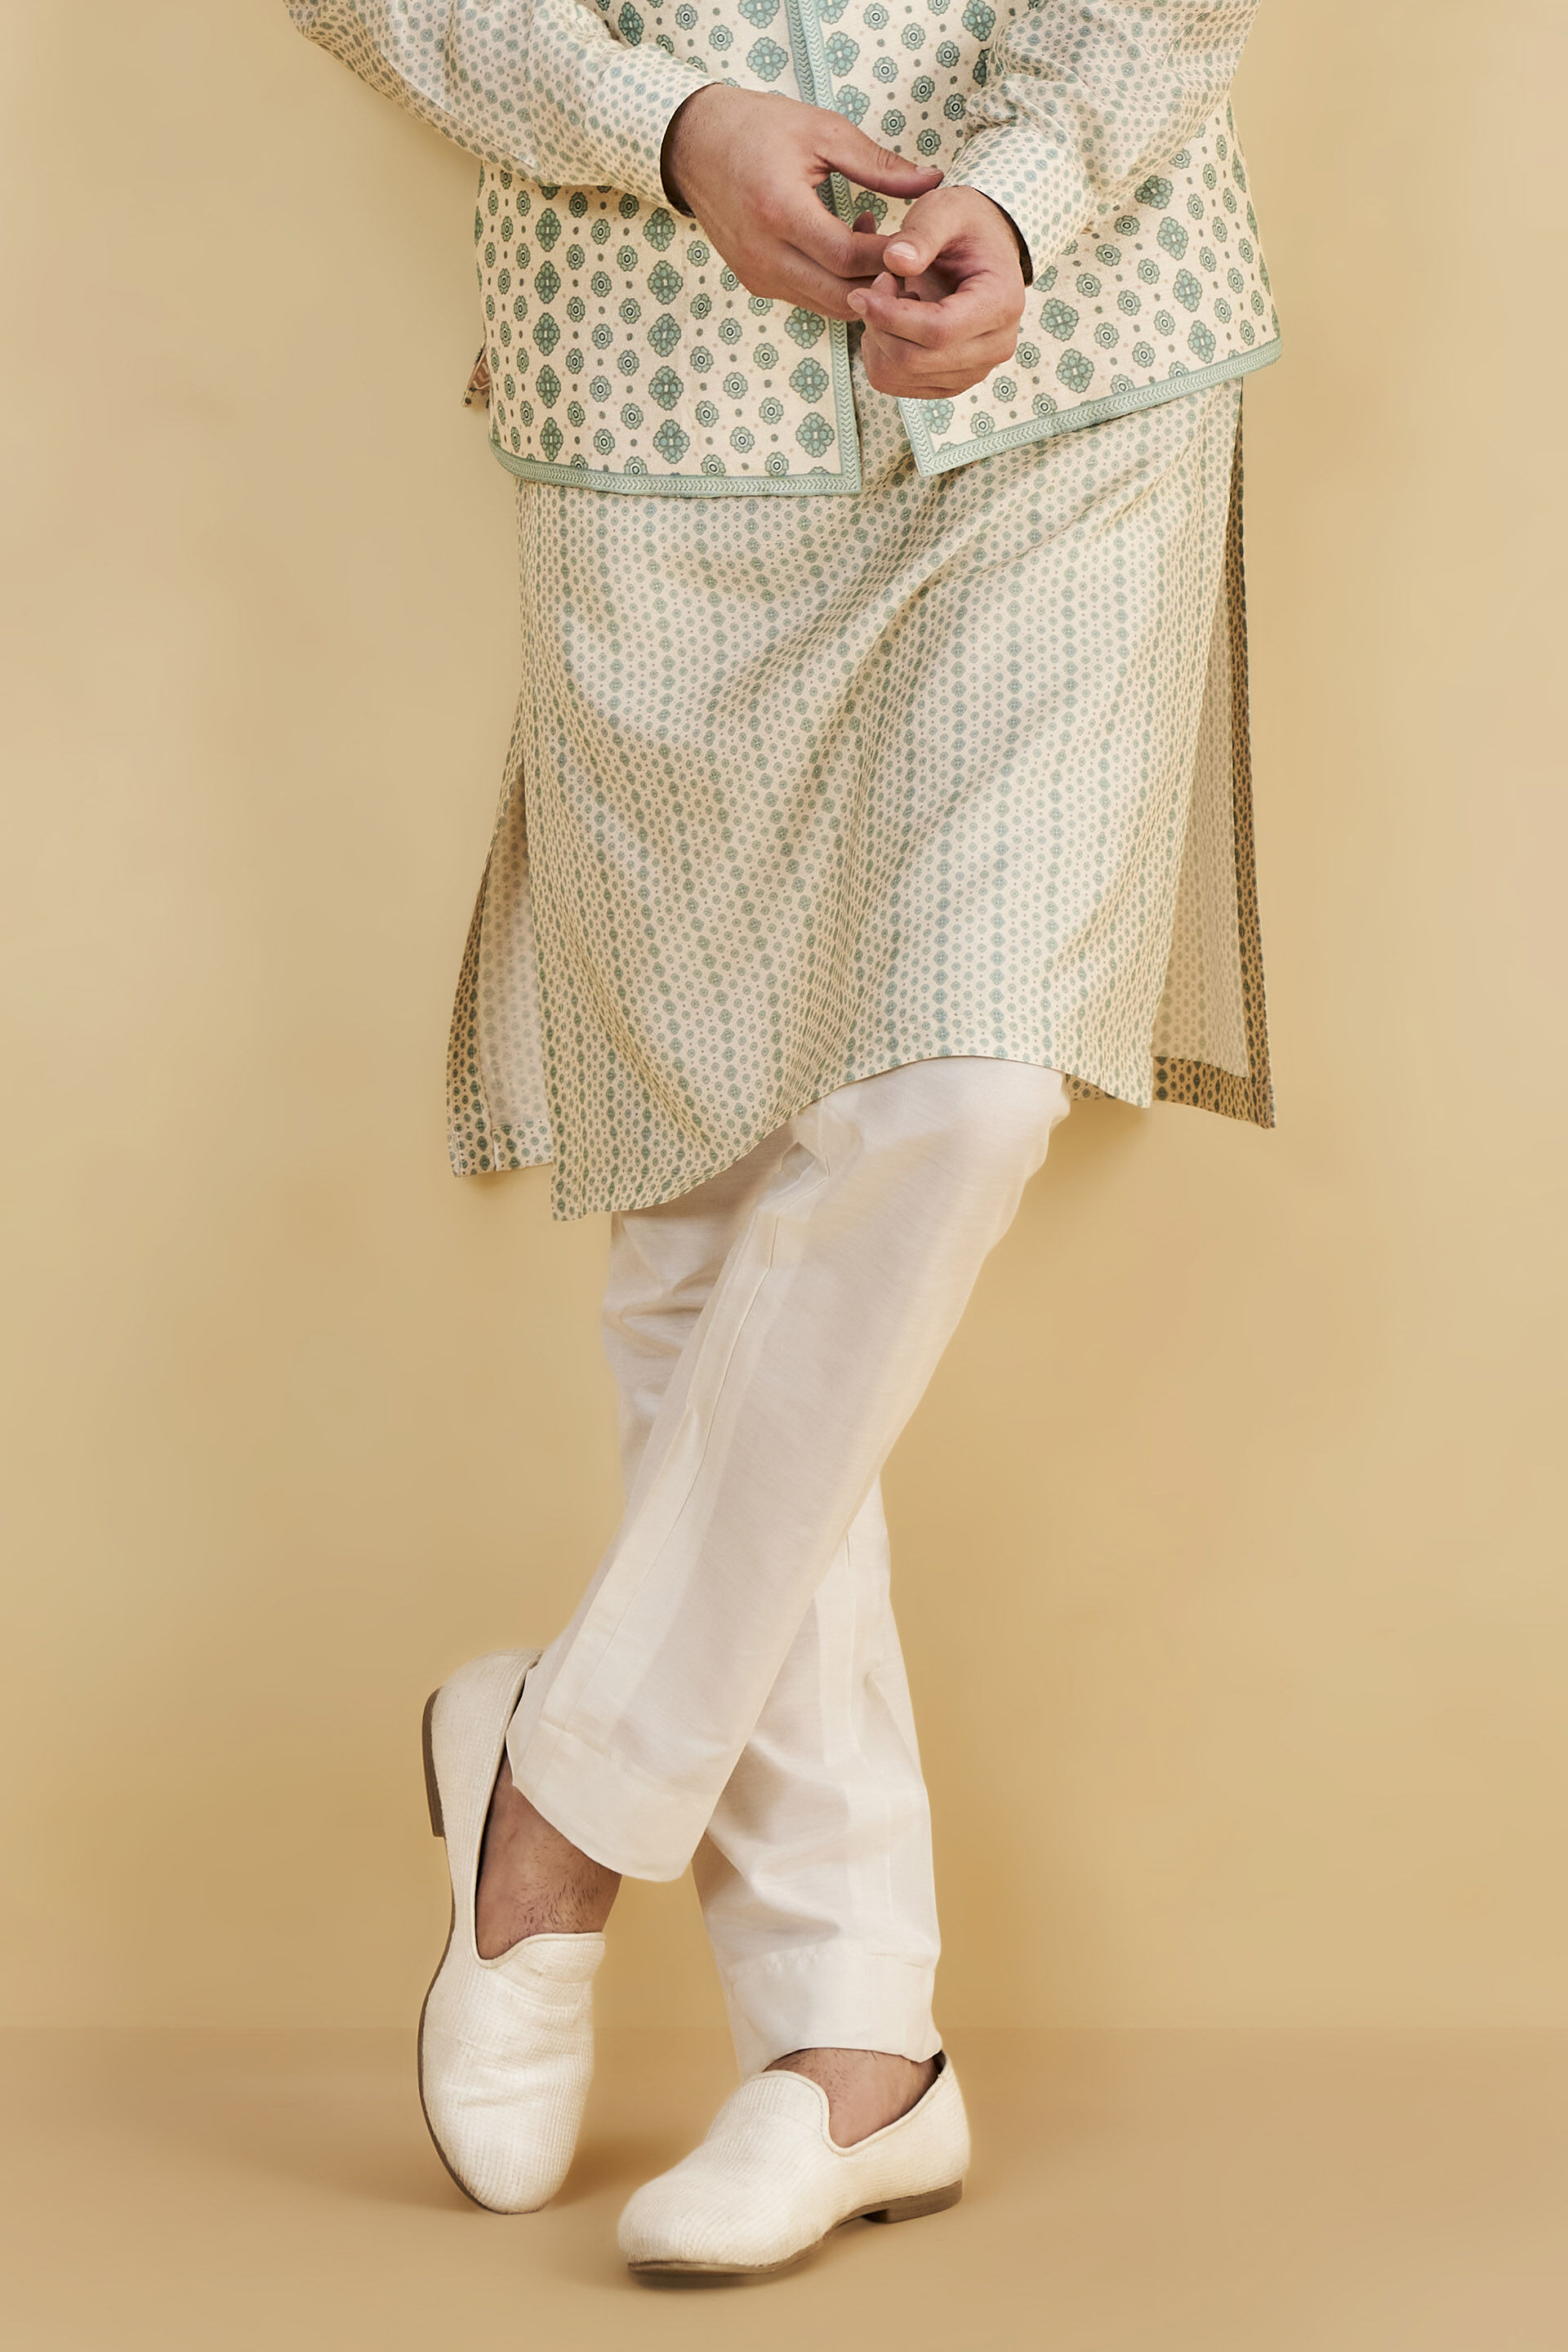 SUITSUPPLY Brescia Trousers Men's UK 36 / W31 Wool Silk Linen Patterned  Grey | eBay